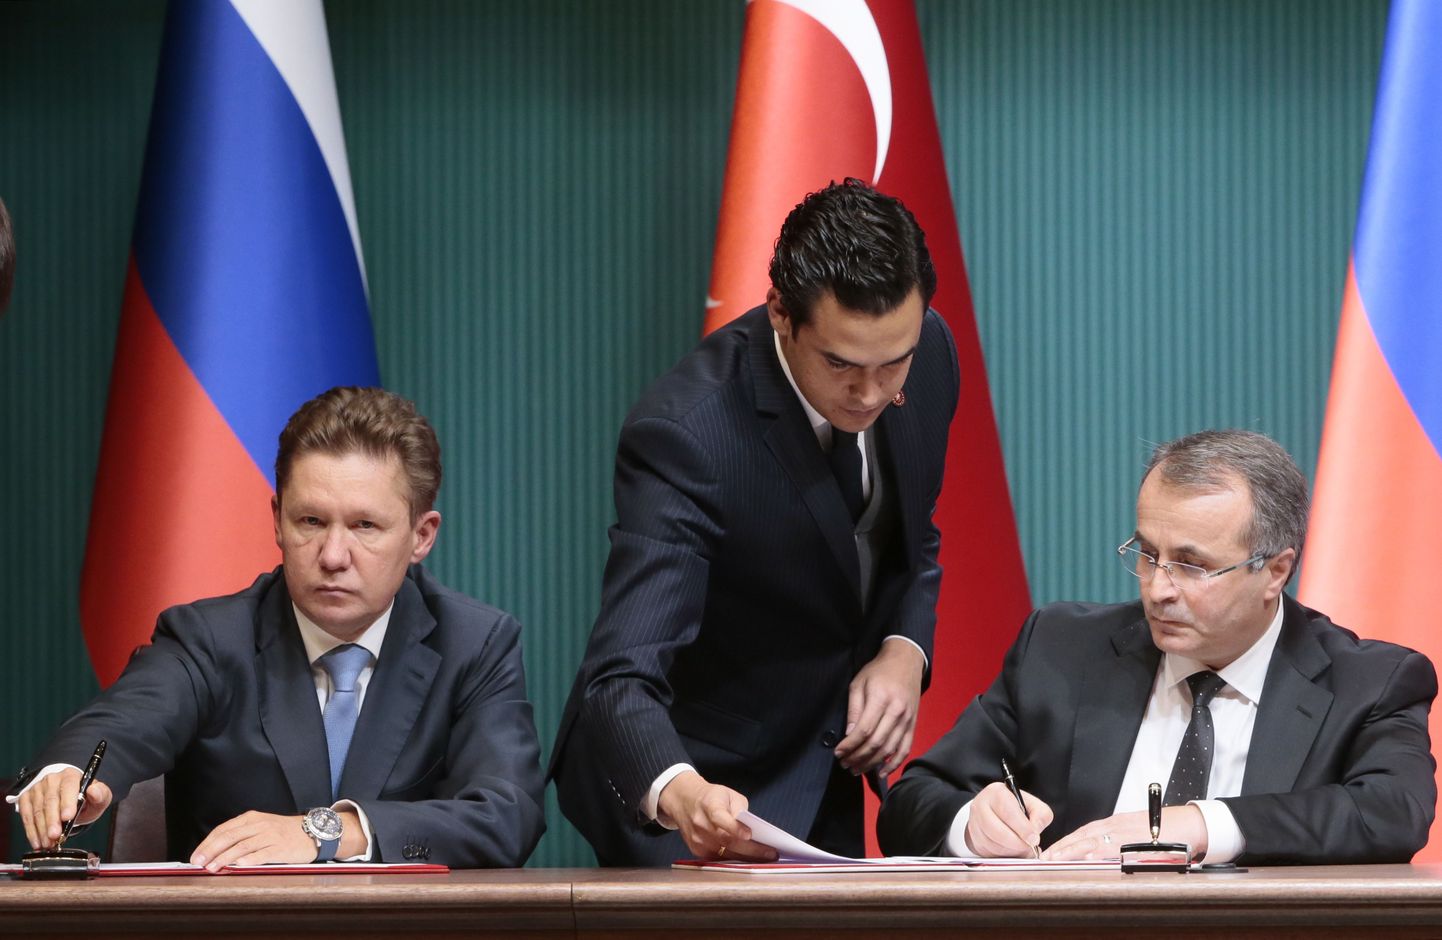 Gazpromi juht Aleksei Miller (vasakul) ja Türgi energiafirma juht Mehmet Konuk allkirjastasid eile Türgis dokumendid, mis puudutavad nende edasist koostööd.